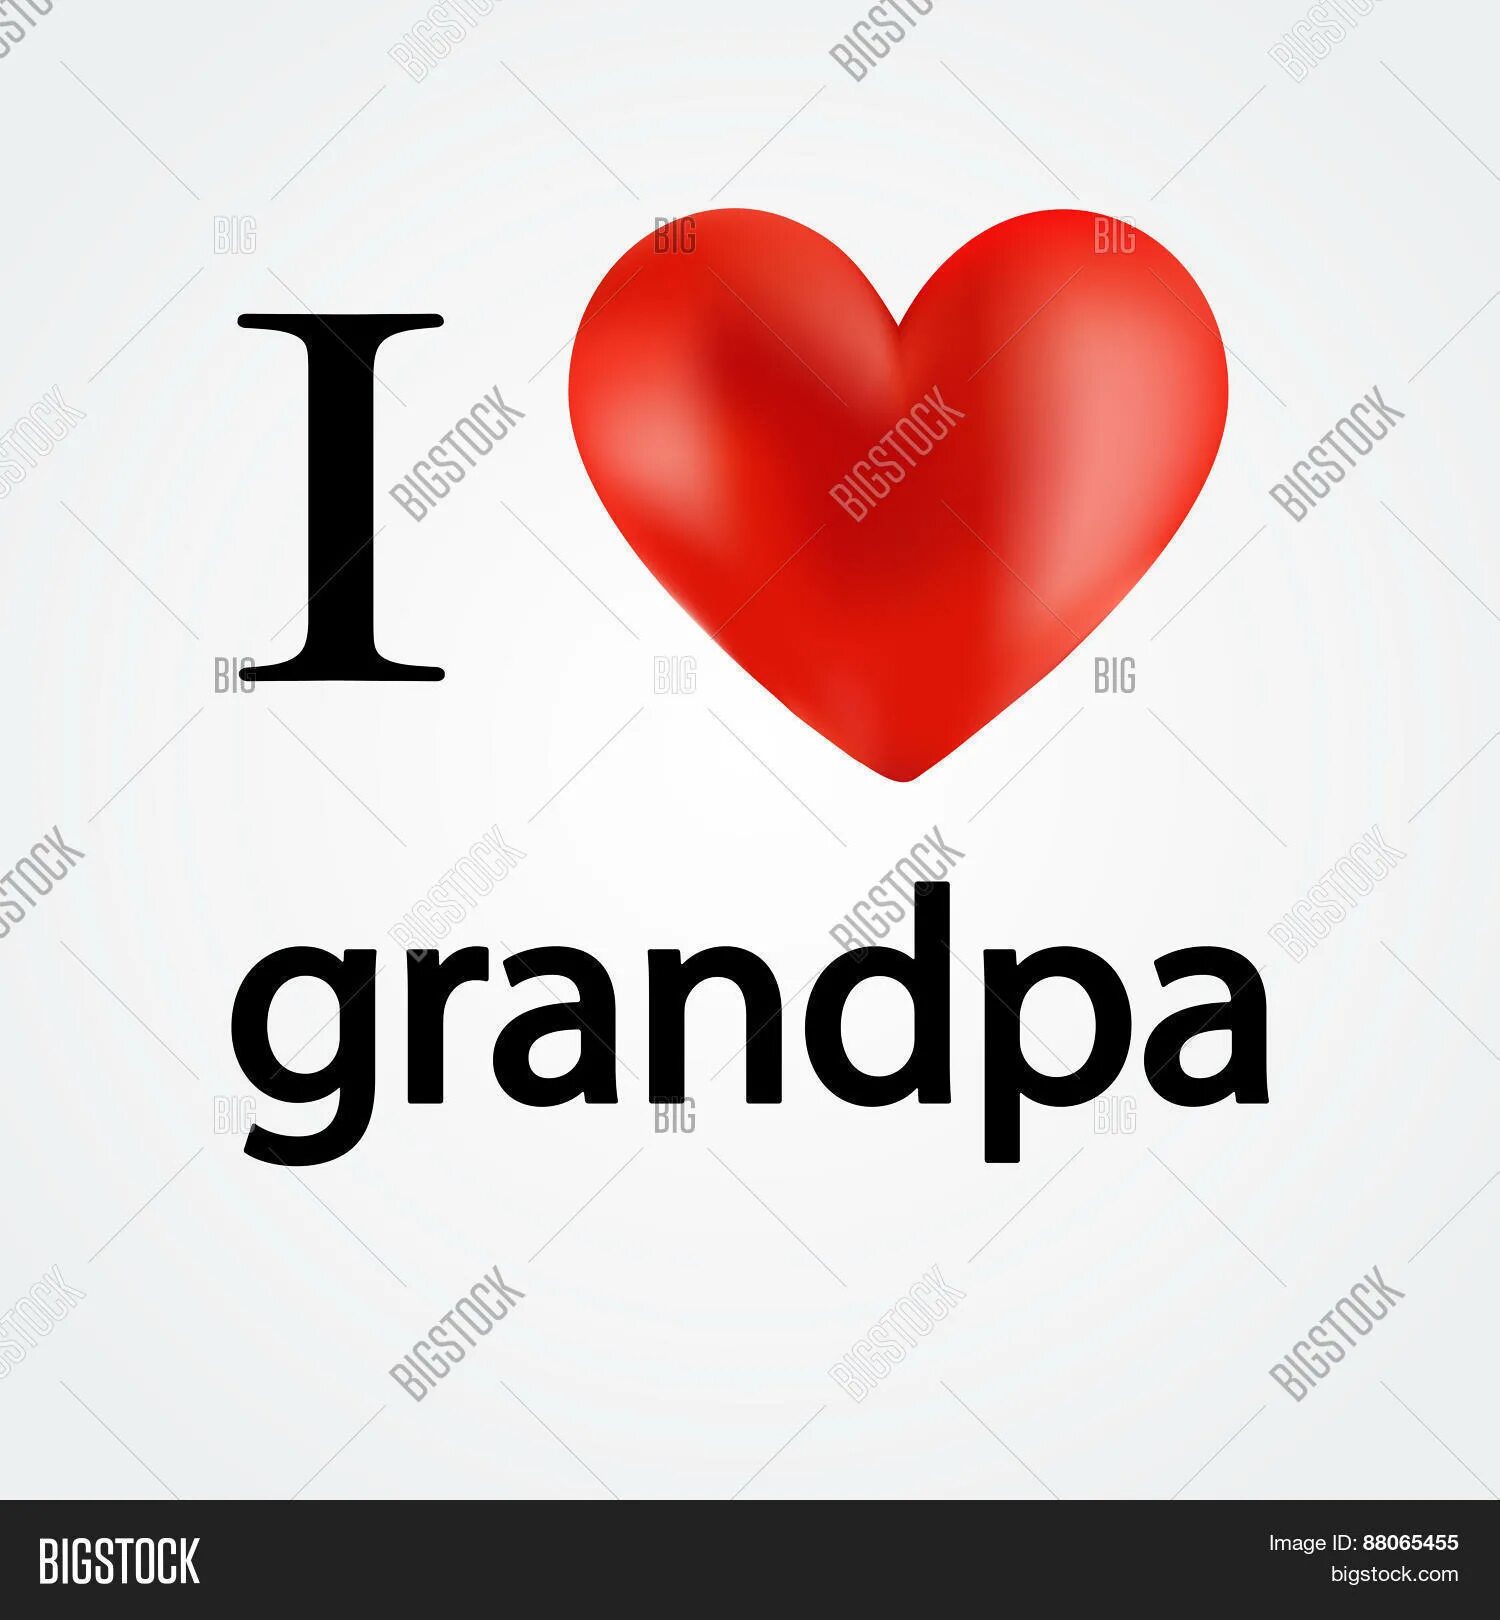 I Love grandpa. My grandpa. I Love you grandpa рисунок. Фото с надписью i Love grandpa.